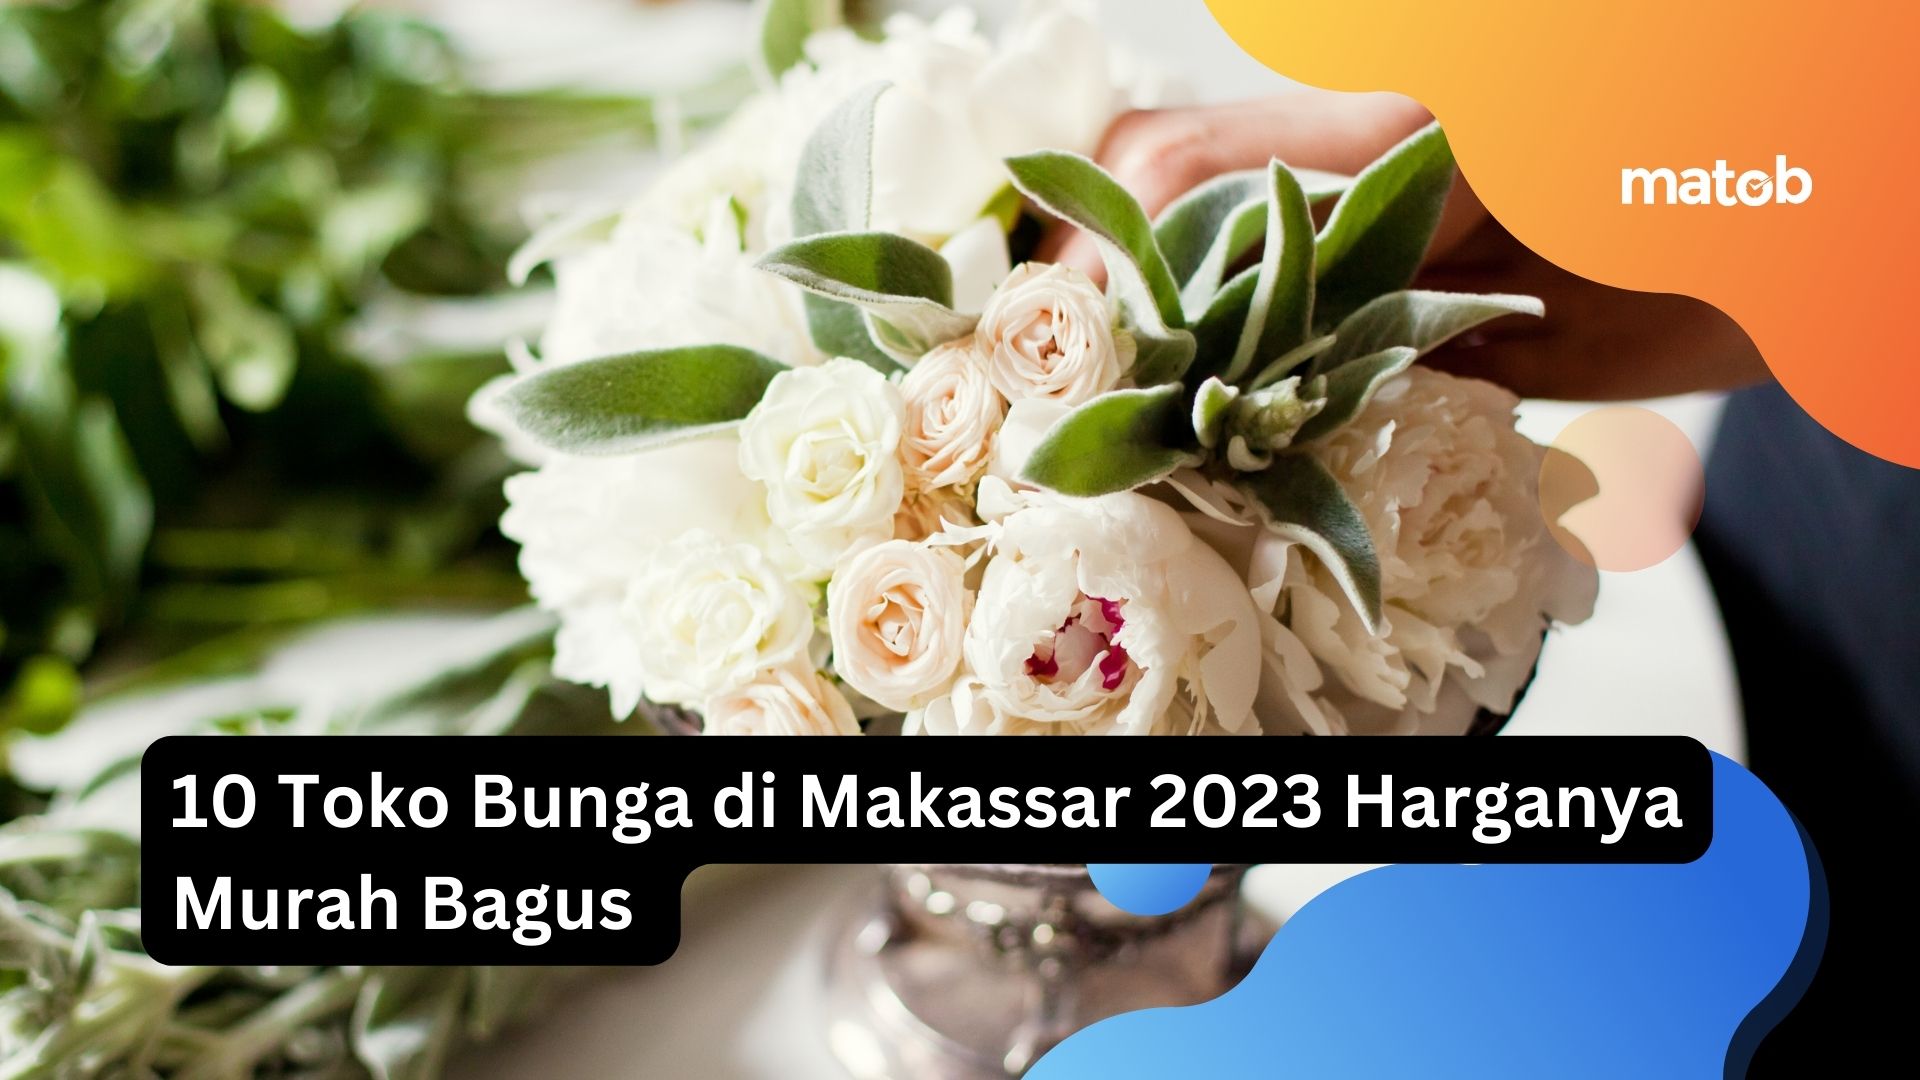 10 Toko Bunga di Makassar 2023 Harganya Murah Bagus